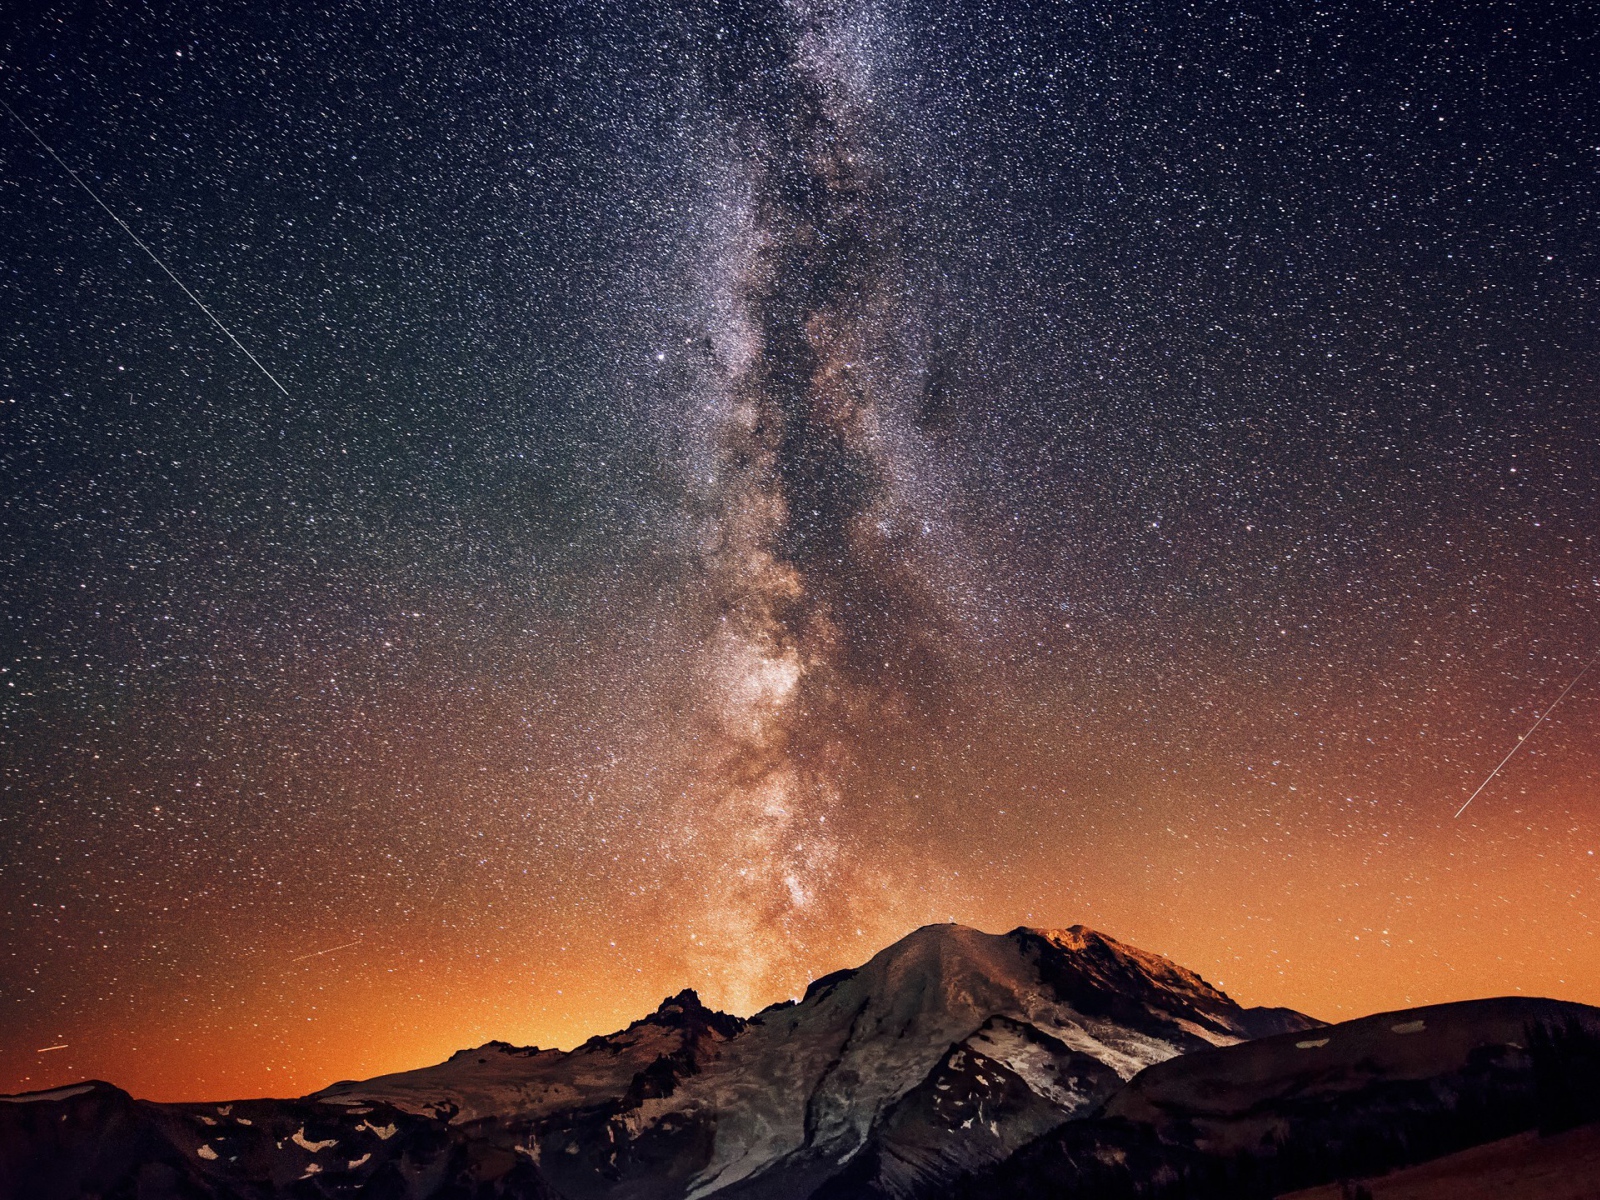 Млечный путь в звездном небе над горой 